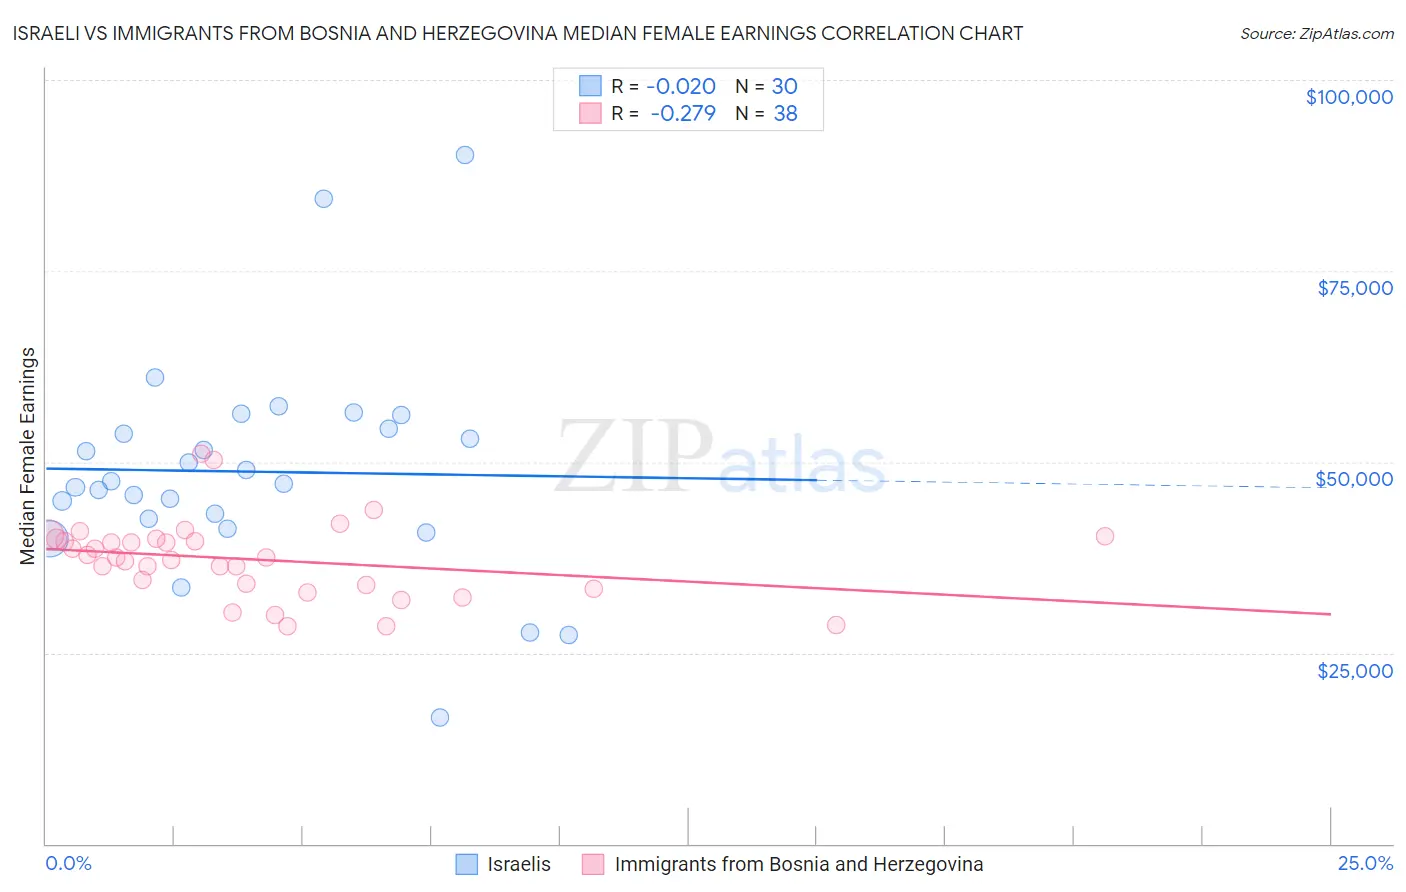 Israeli vs Immigrants from Bosnia and Herzegovina Median Female Earnings